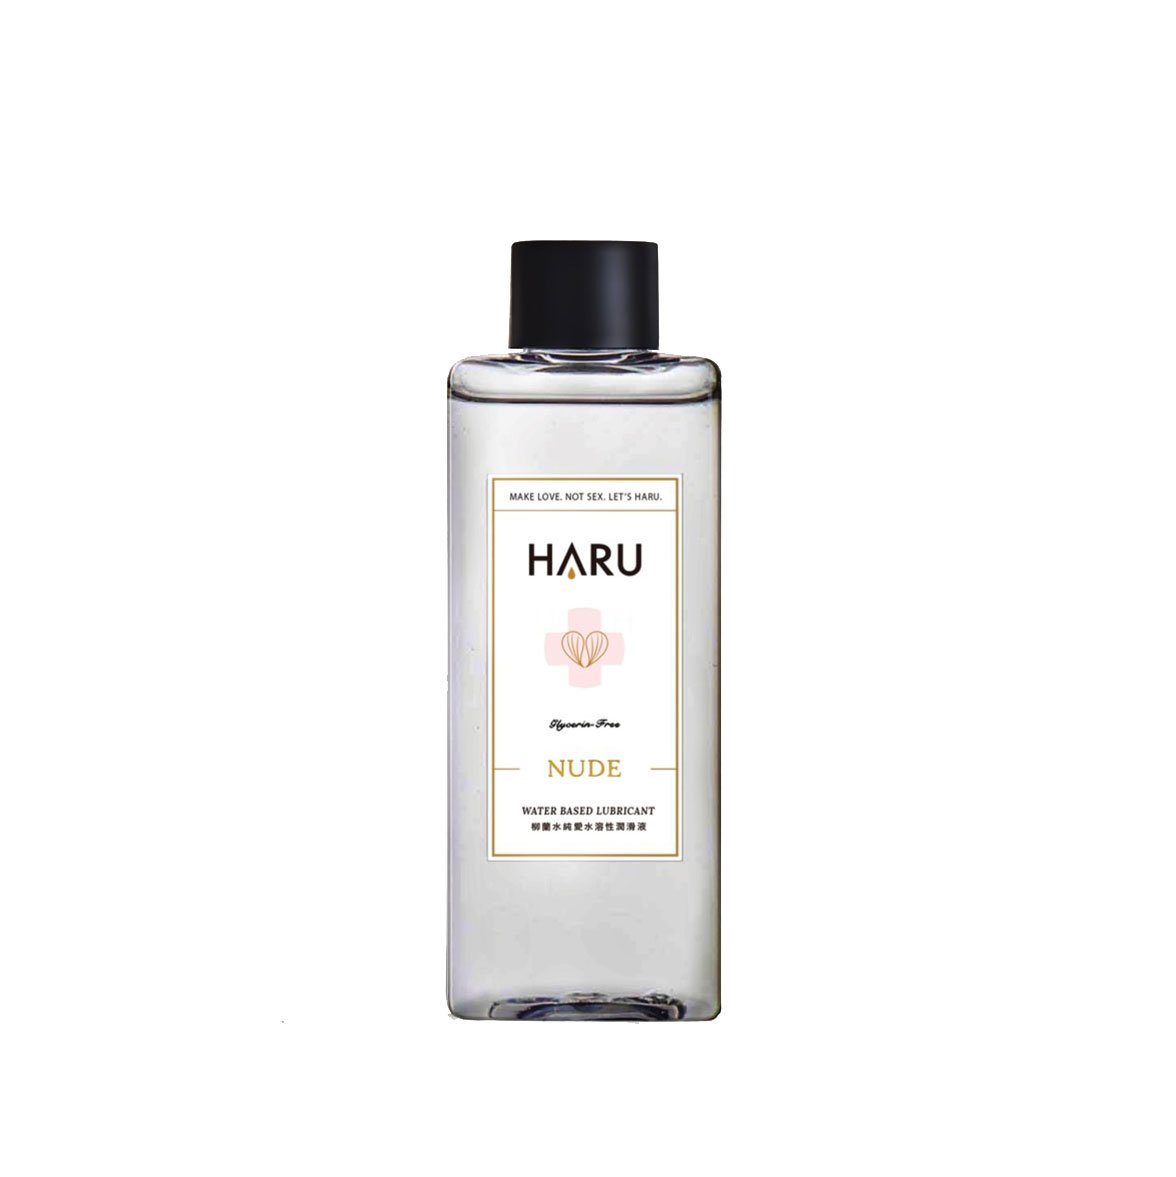 HARU Nude 柳蘭精華 無甘油舒緩敏感水性潤滑液 150 毫升 潤滑液 購買